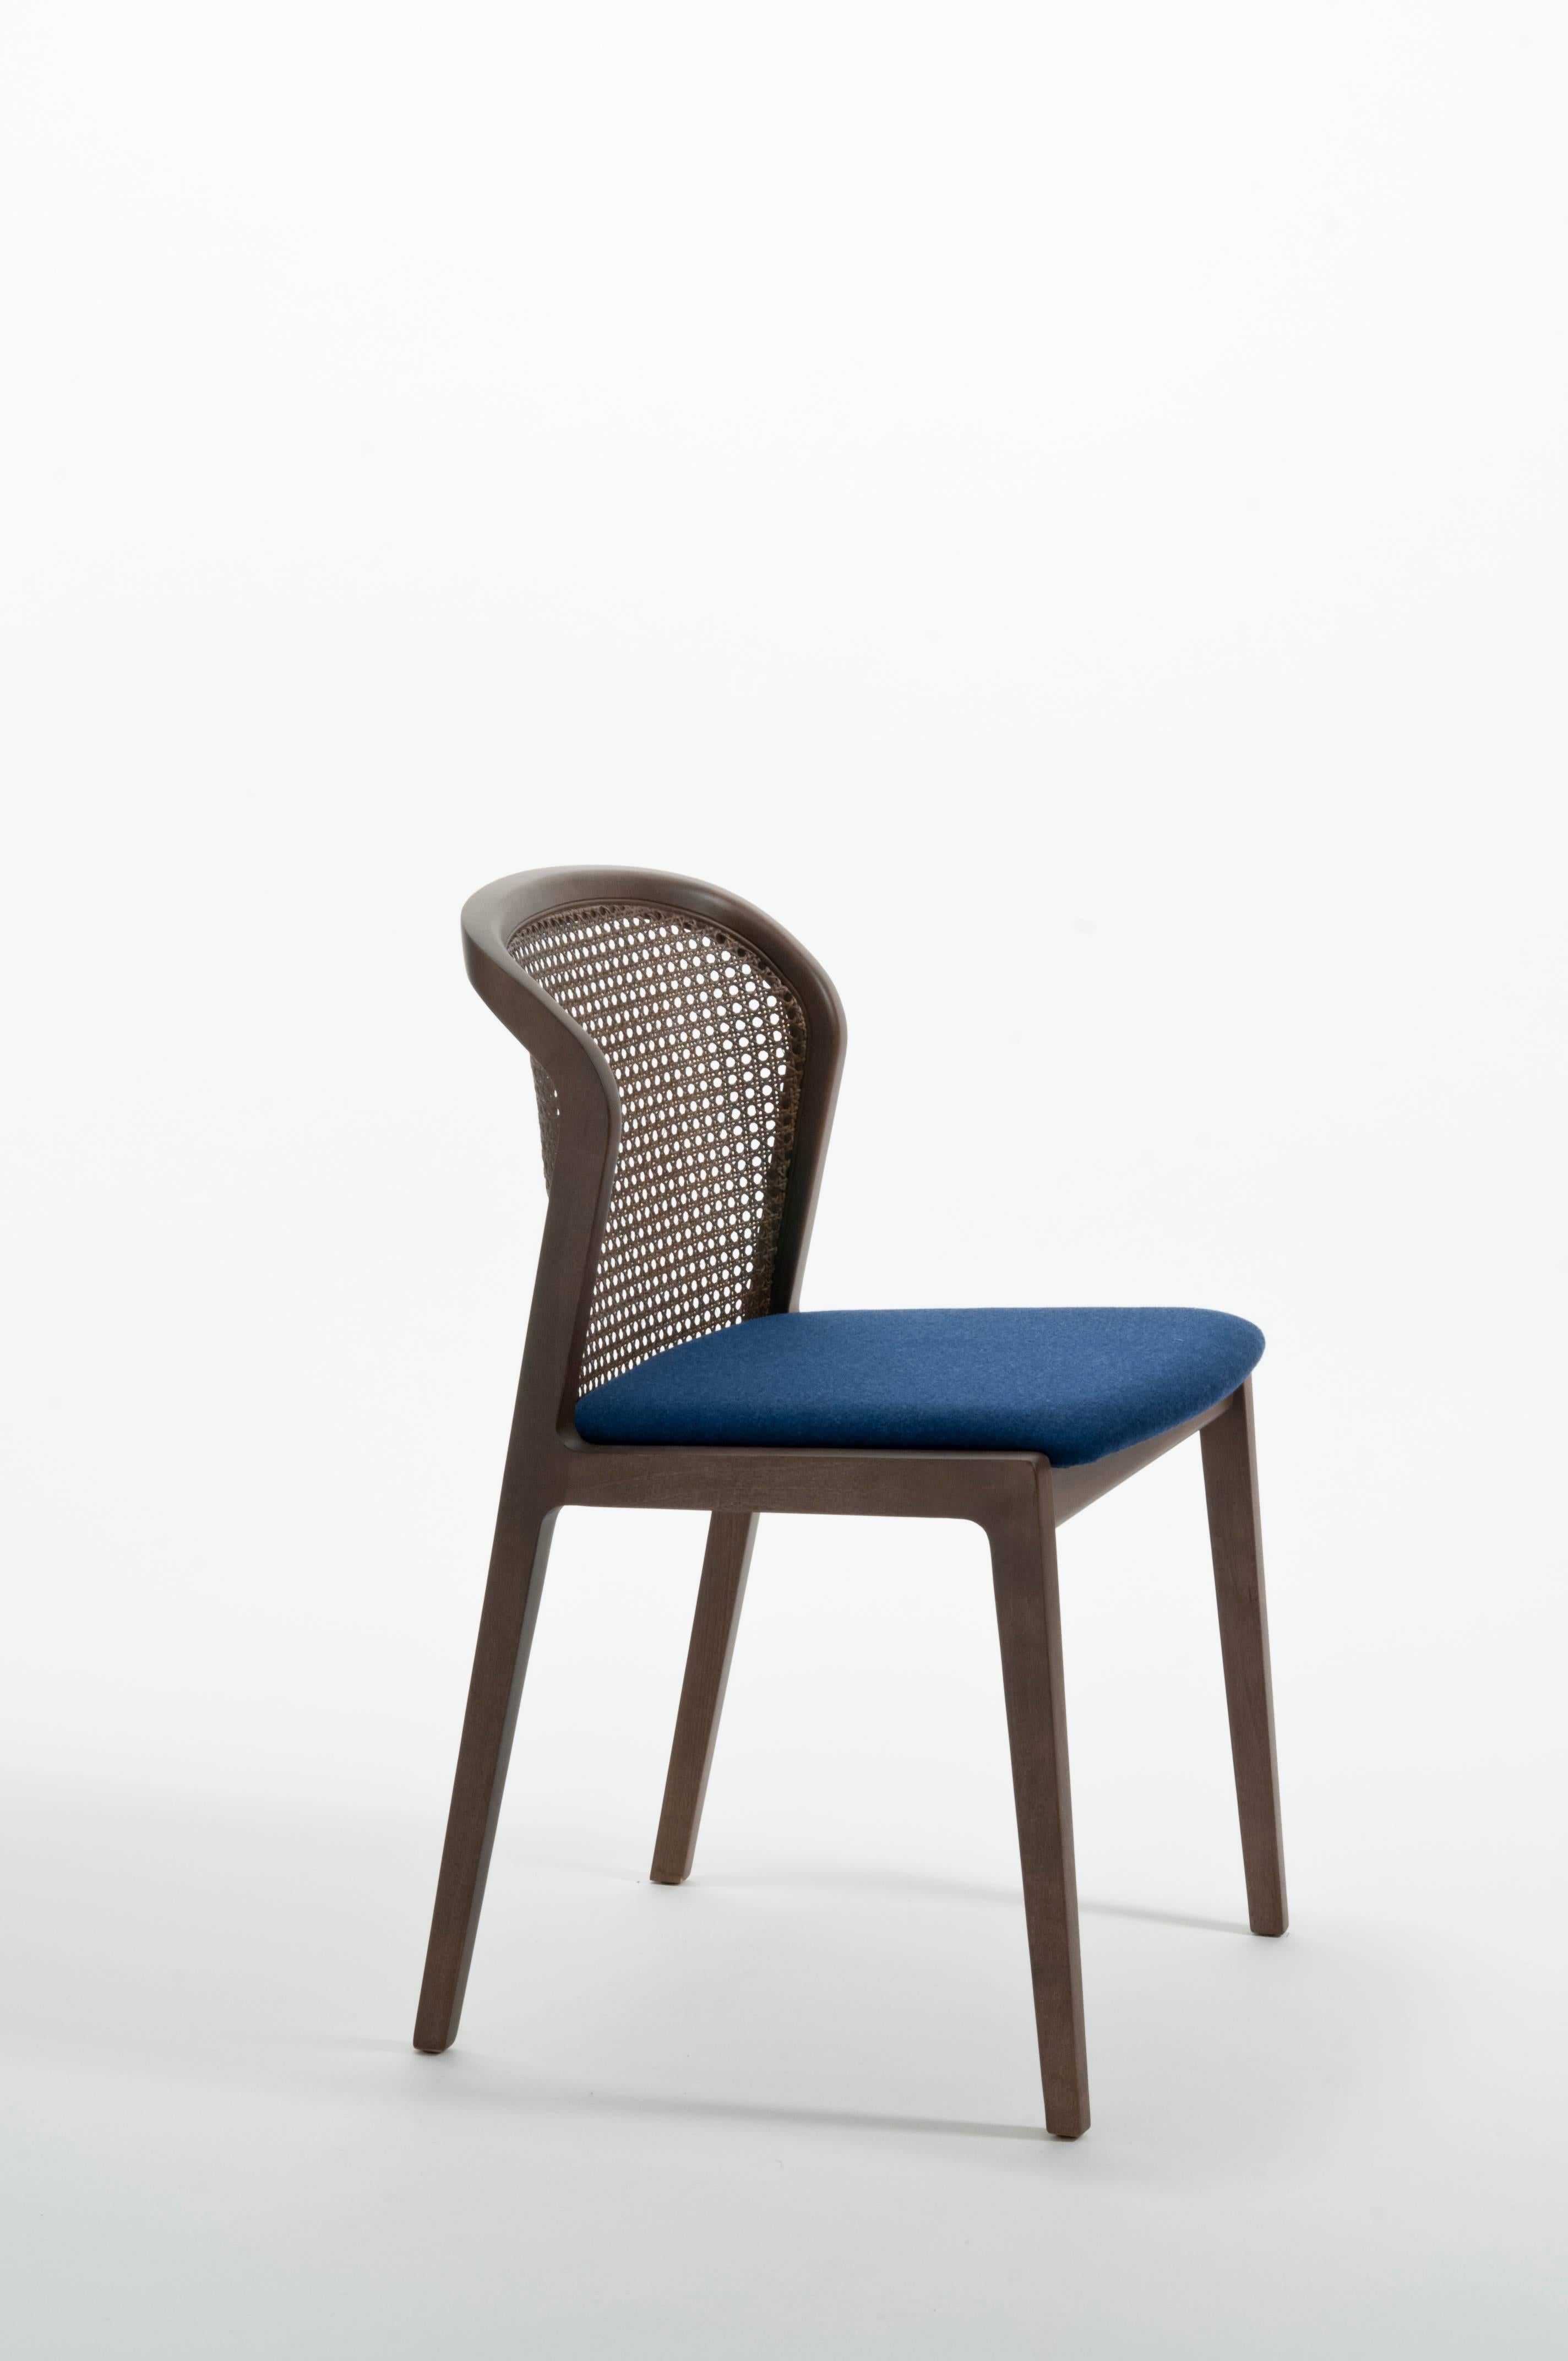 Moderne Chaise contemporaine Vienna, design en noyer et paille, assise tapissée beige en vente